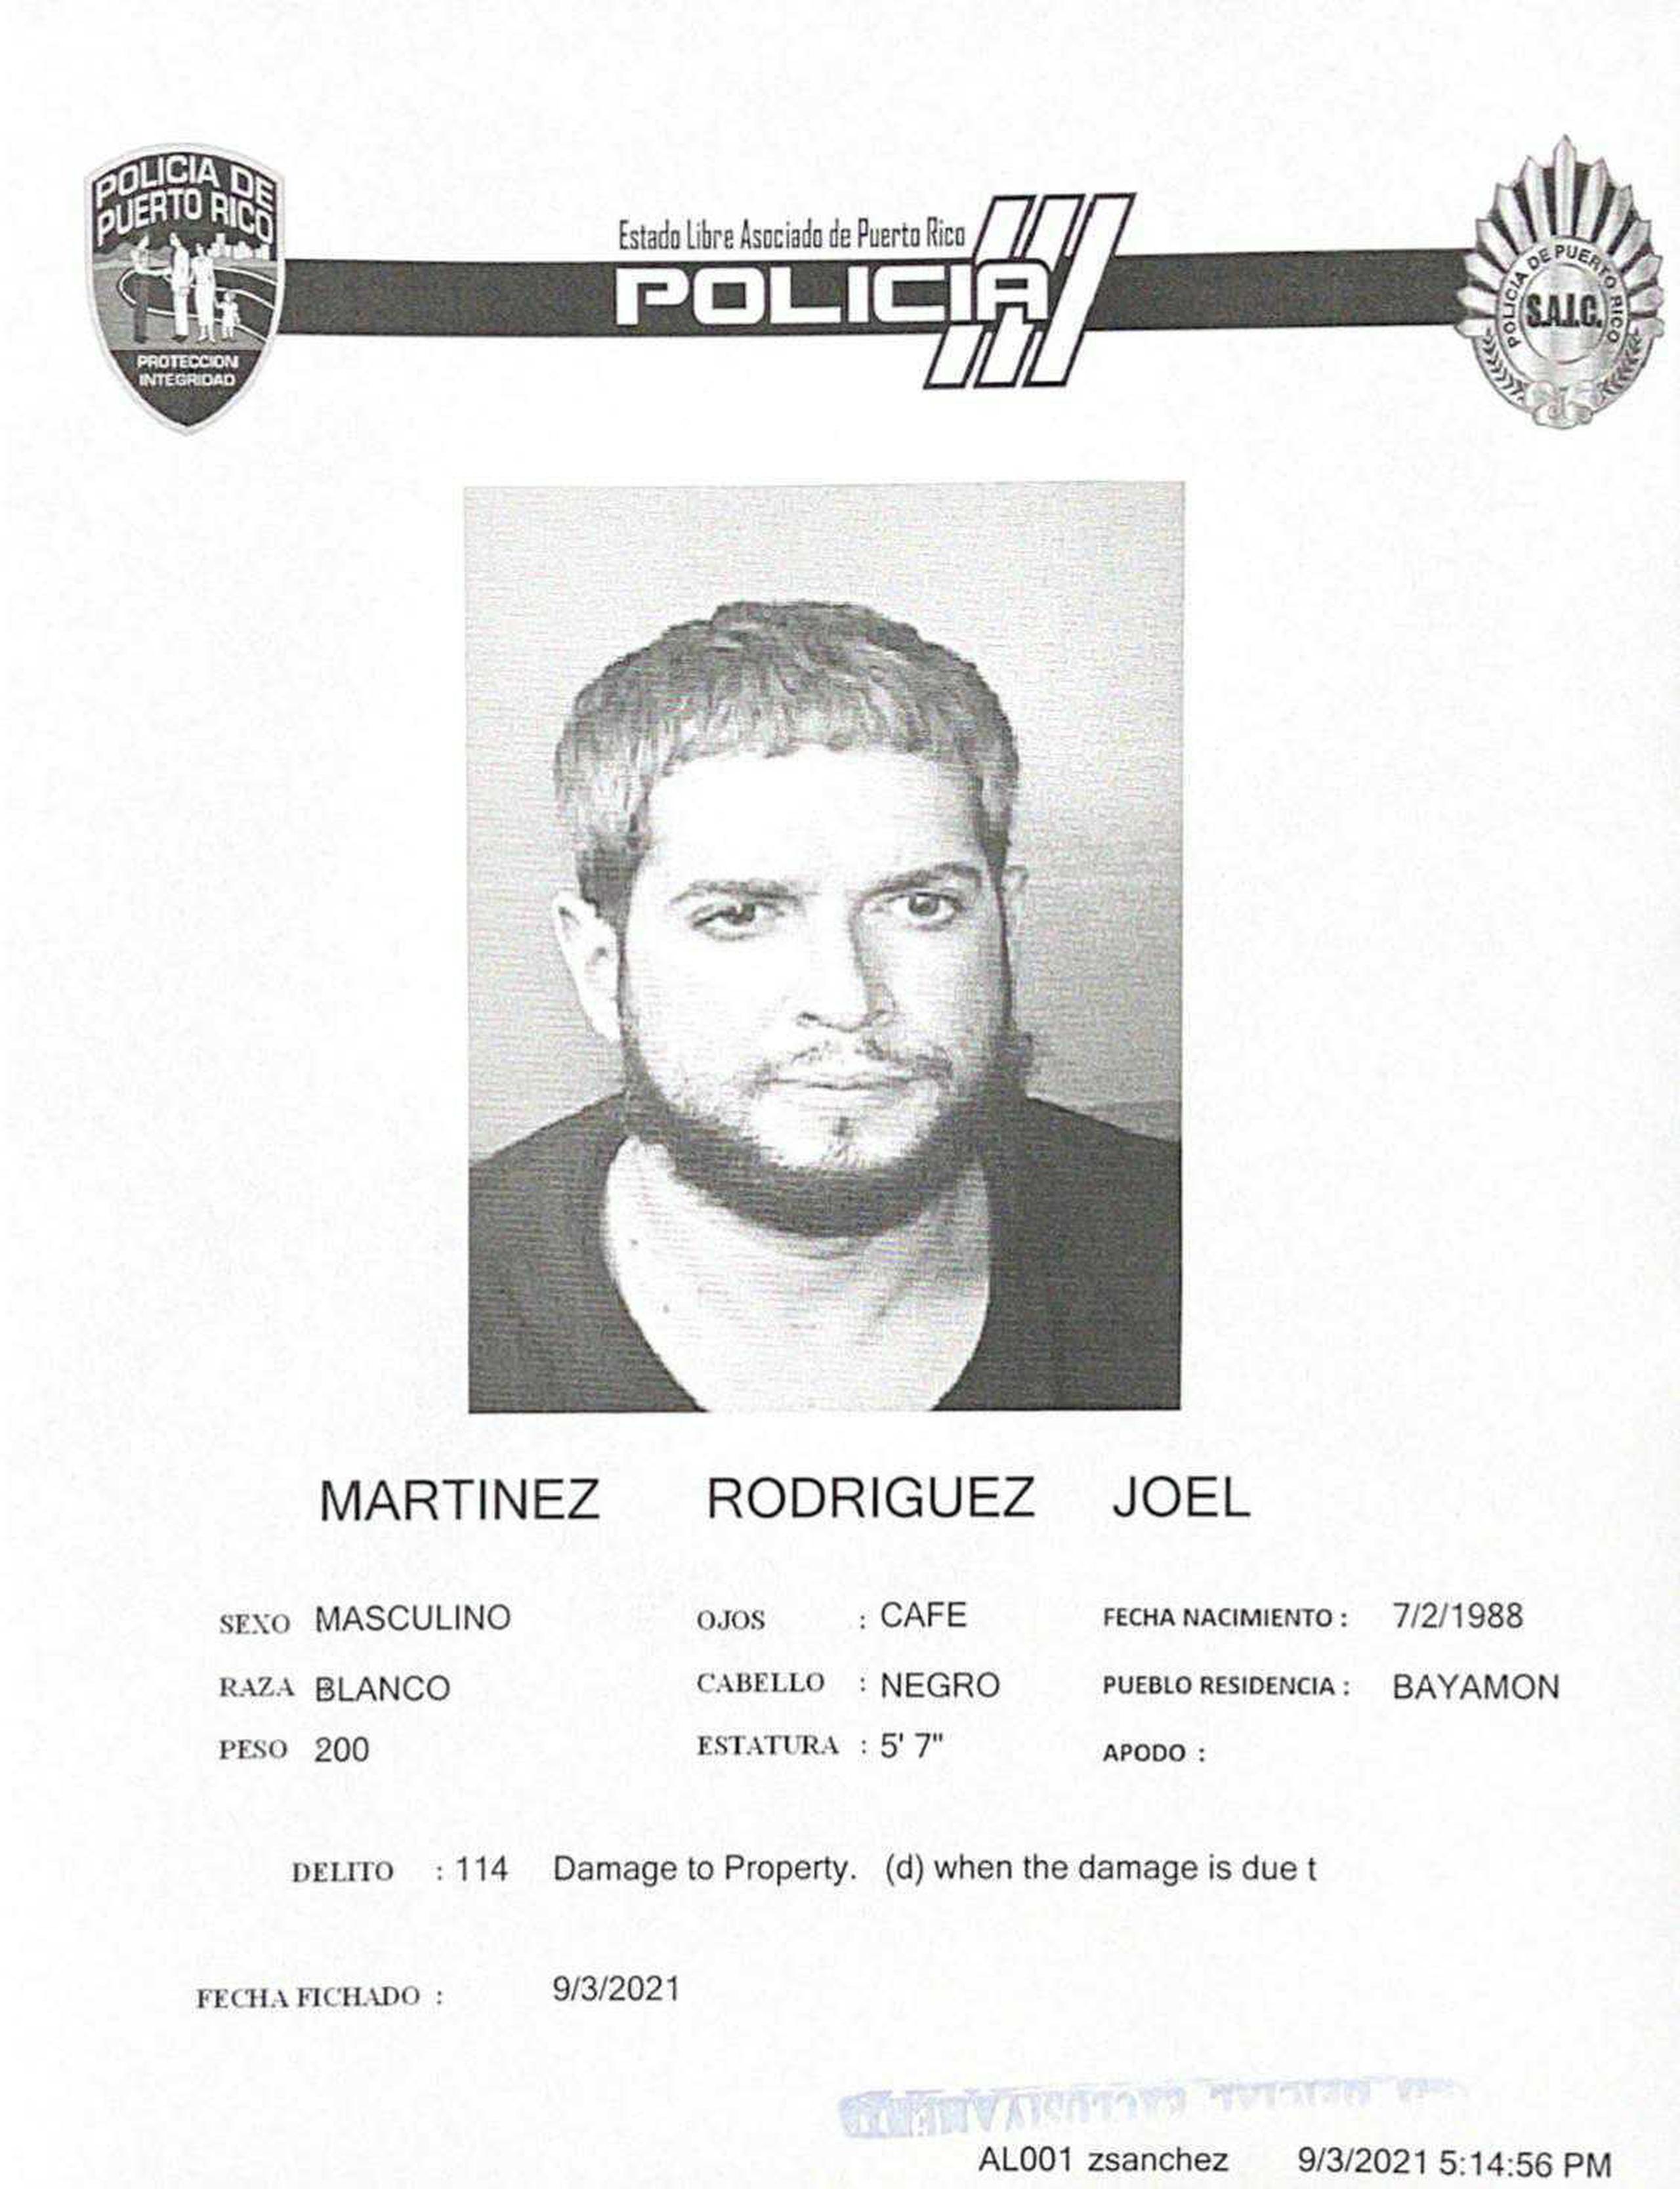 Ficha de Joel Martínez Rodríguez, el paciente imputado de provocar daños en institución hospitalaria. 